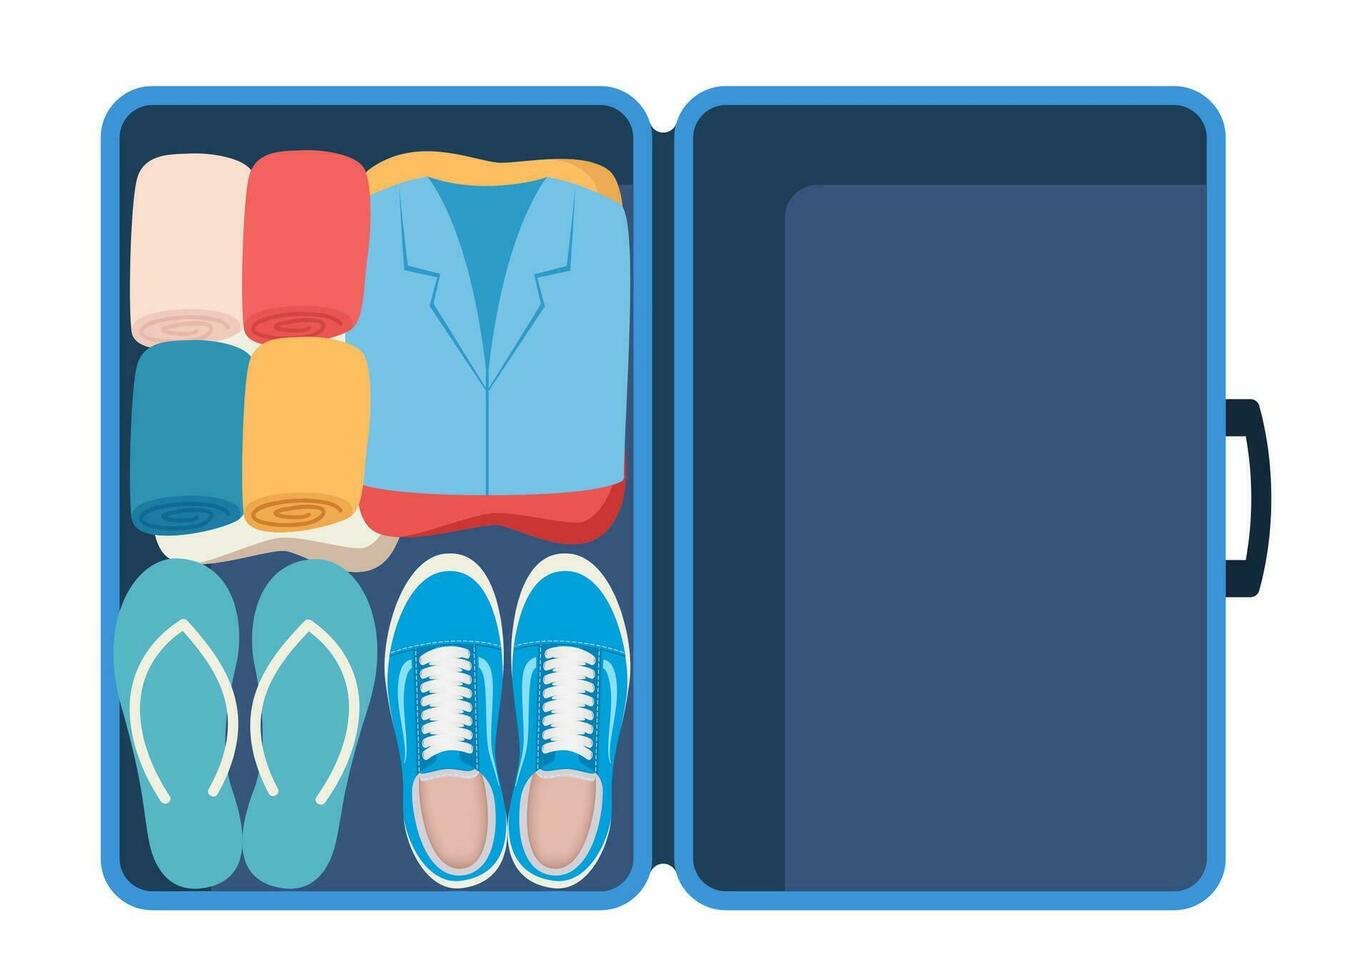 valise avec emballé vêtements pour Voyage dans Haut voir. vêtements, chaussure et accessoires. personnel affaires dans bagage, Aller sur vacances, périple ou affaires voyage. vecteur illustration.